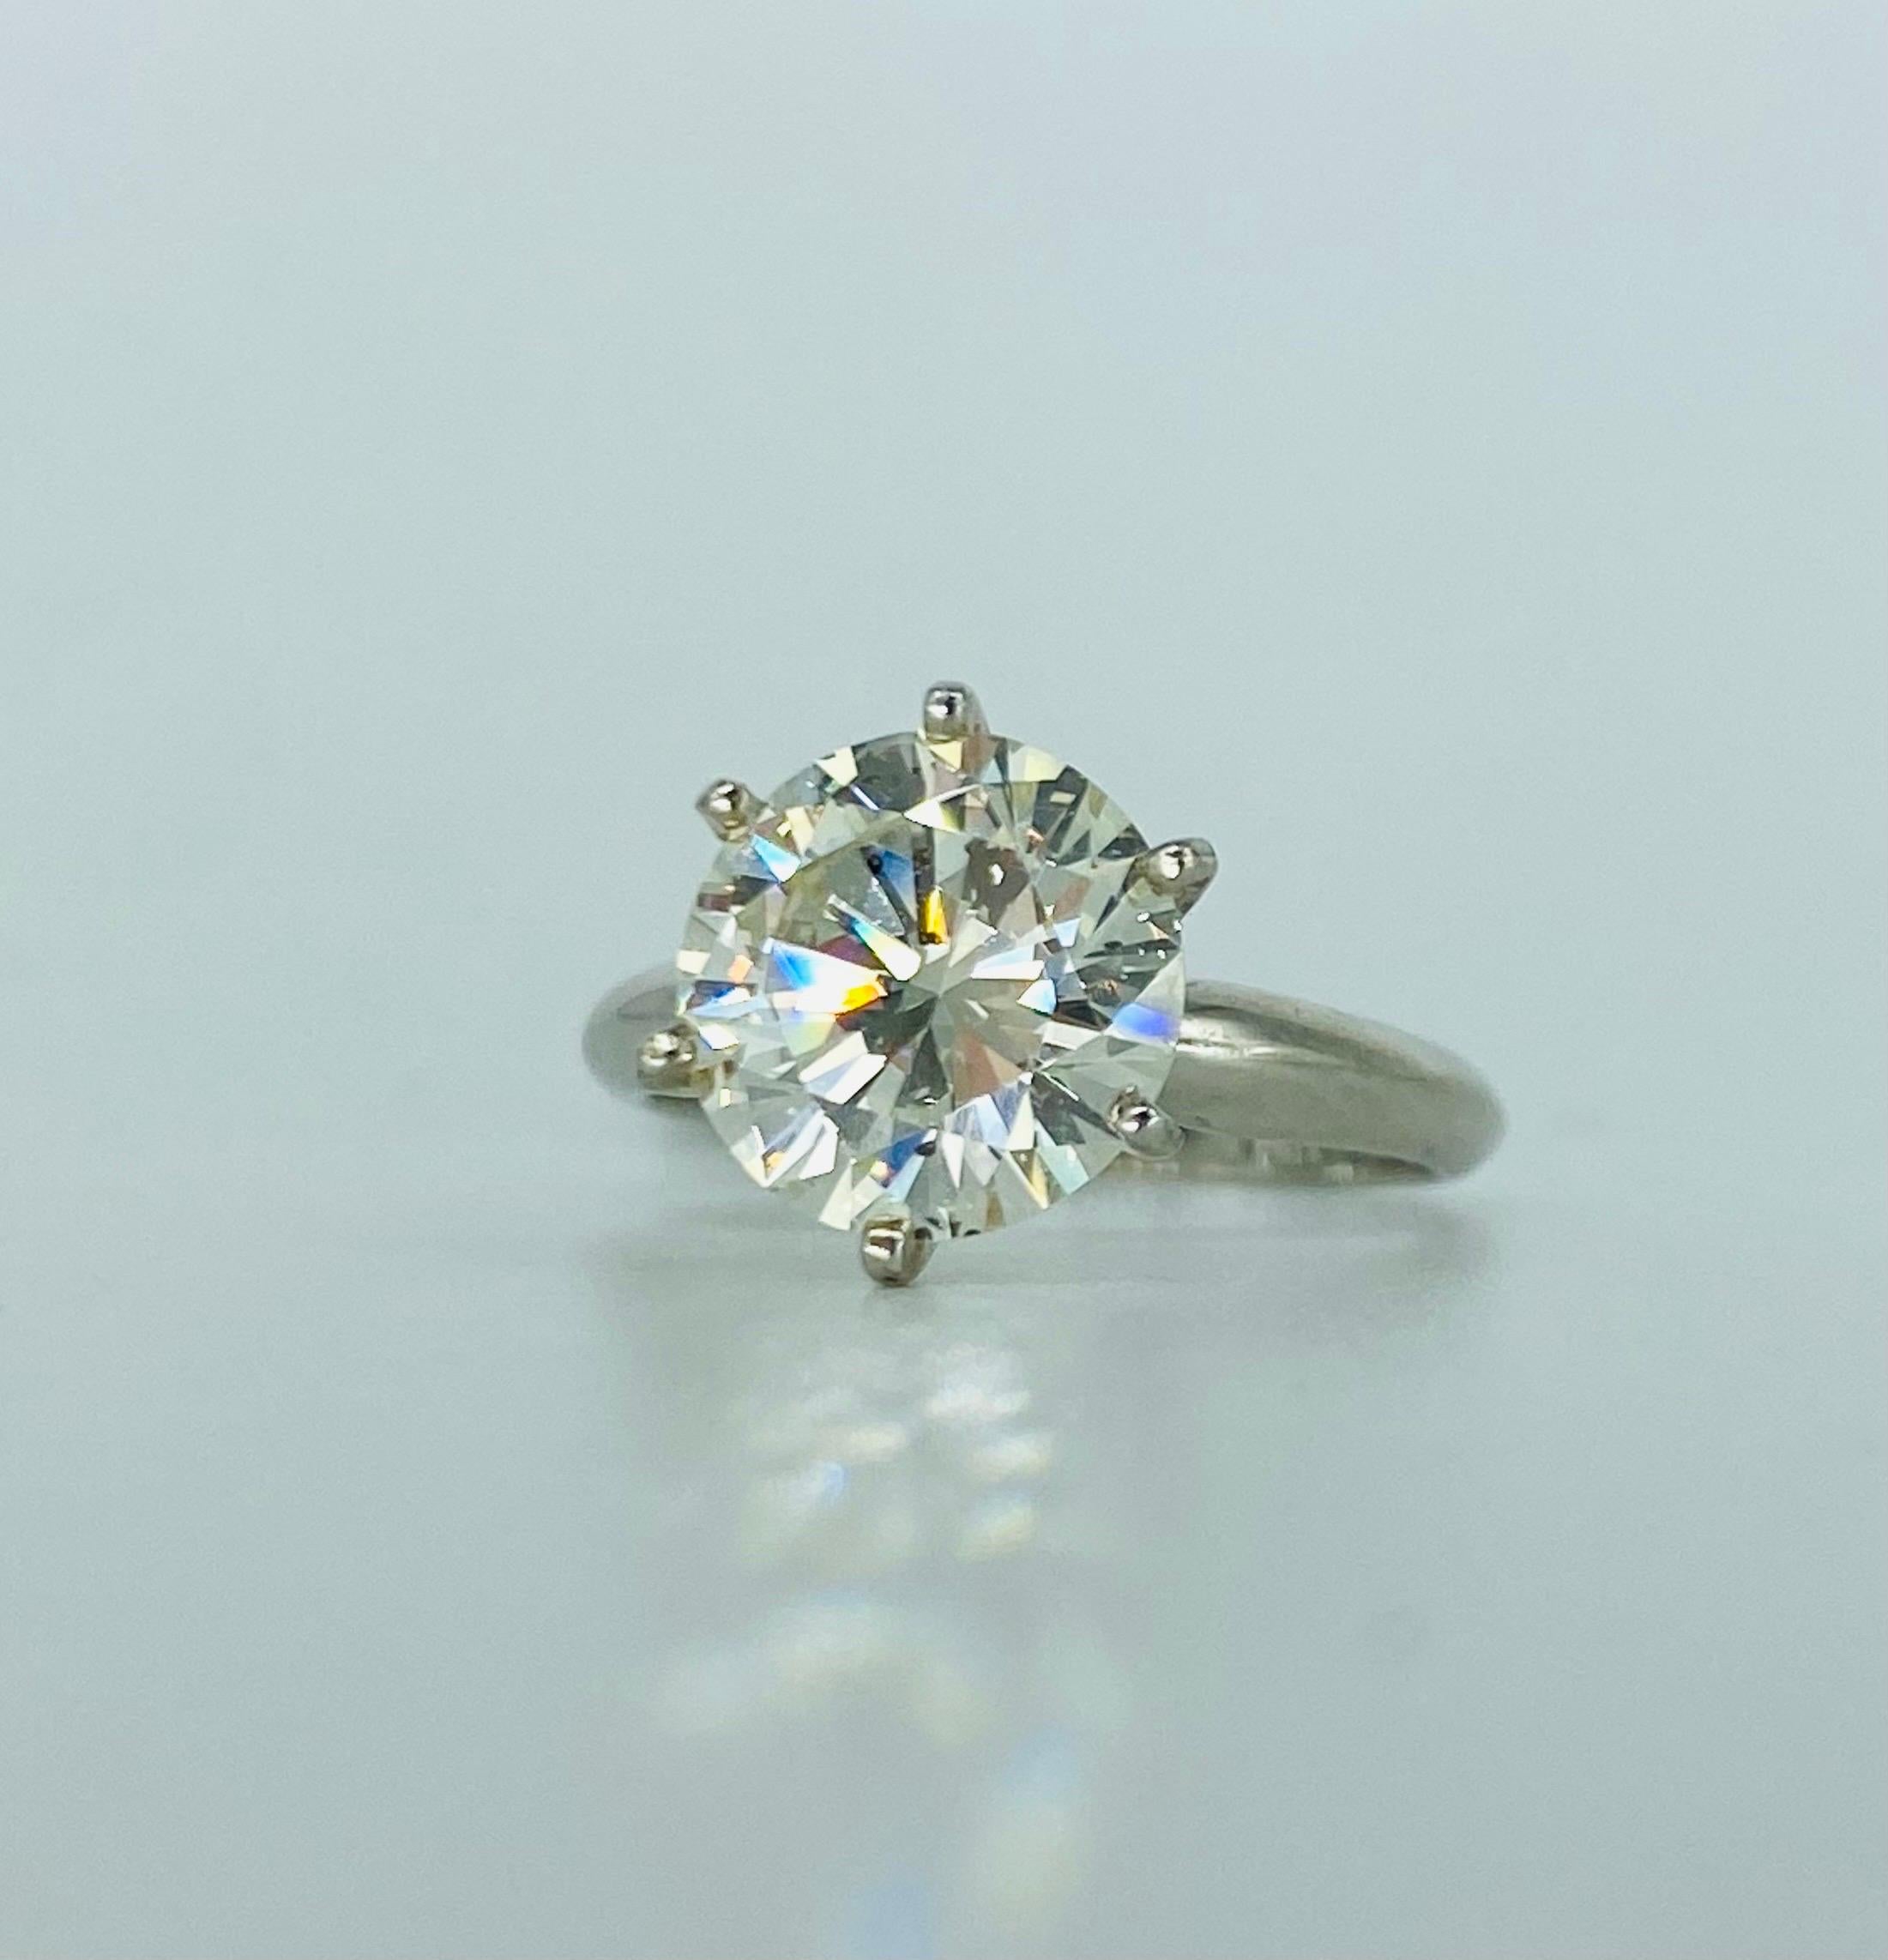 Bague en diamant de 3,09 carats certifiée par le GIA.
Le diamant a beaucoup d'éclat et est un diamant naturel. La pureté et la couleur du diamant sont classées par la GIA comme L/SI1.
La bague est sertie dans un anneau en or blanc 18k et correspond